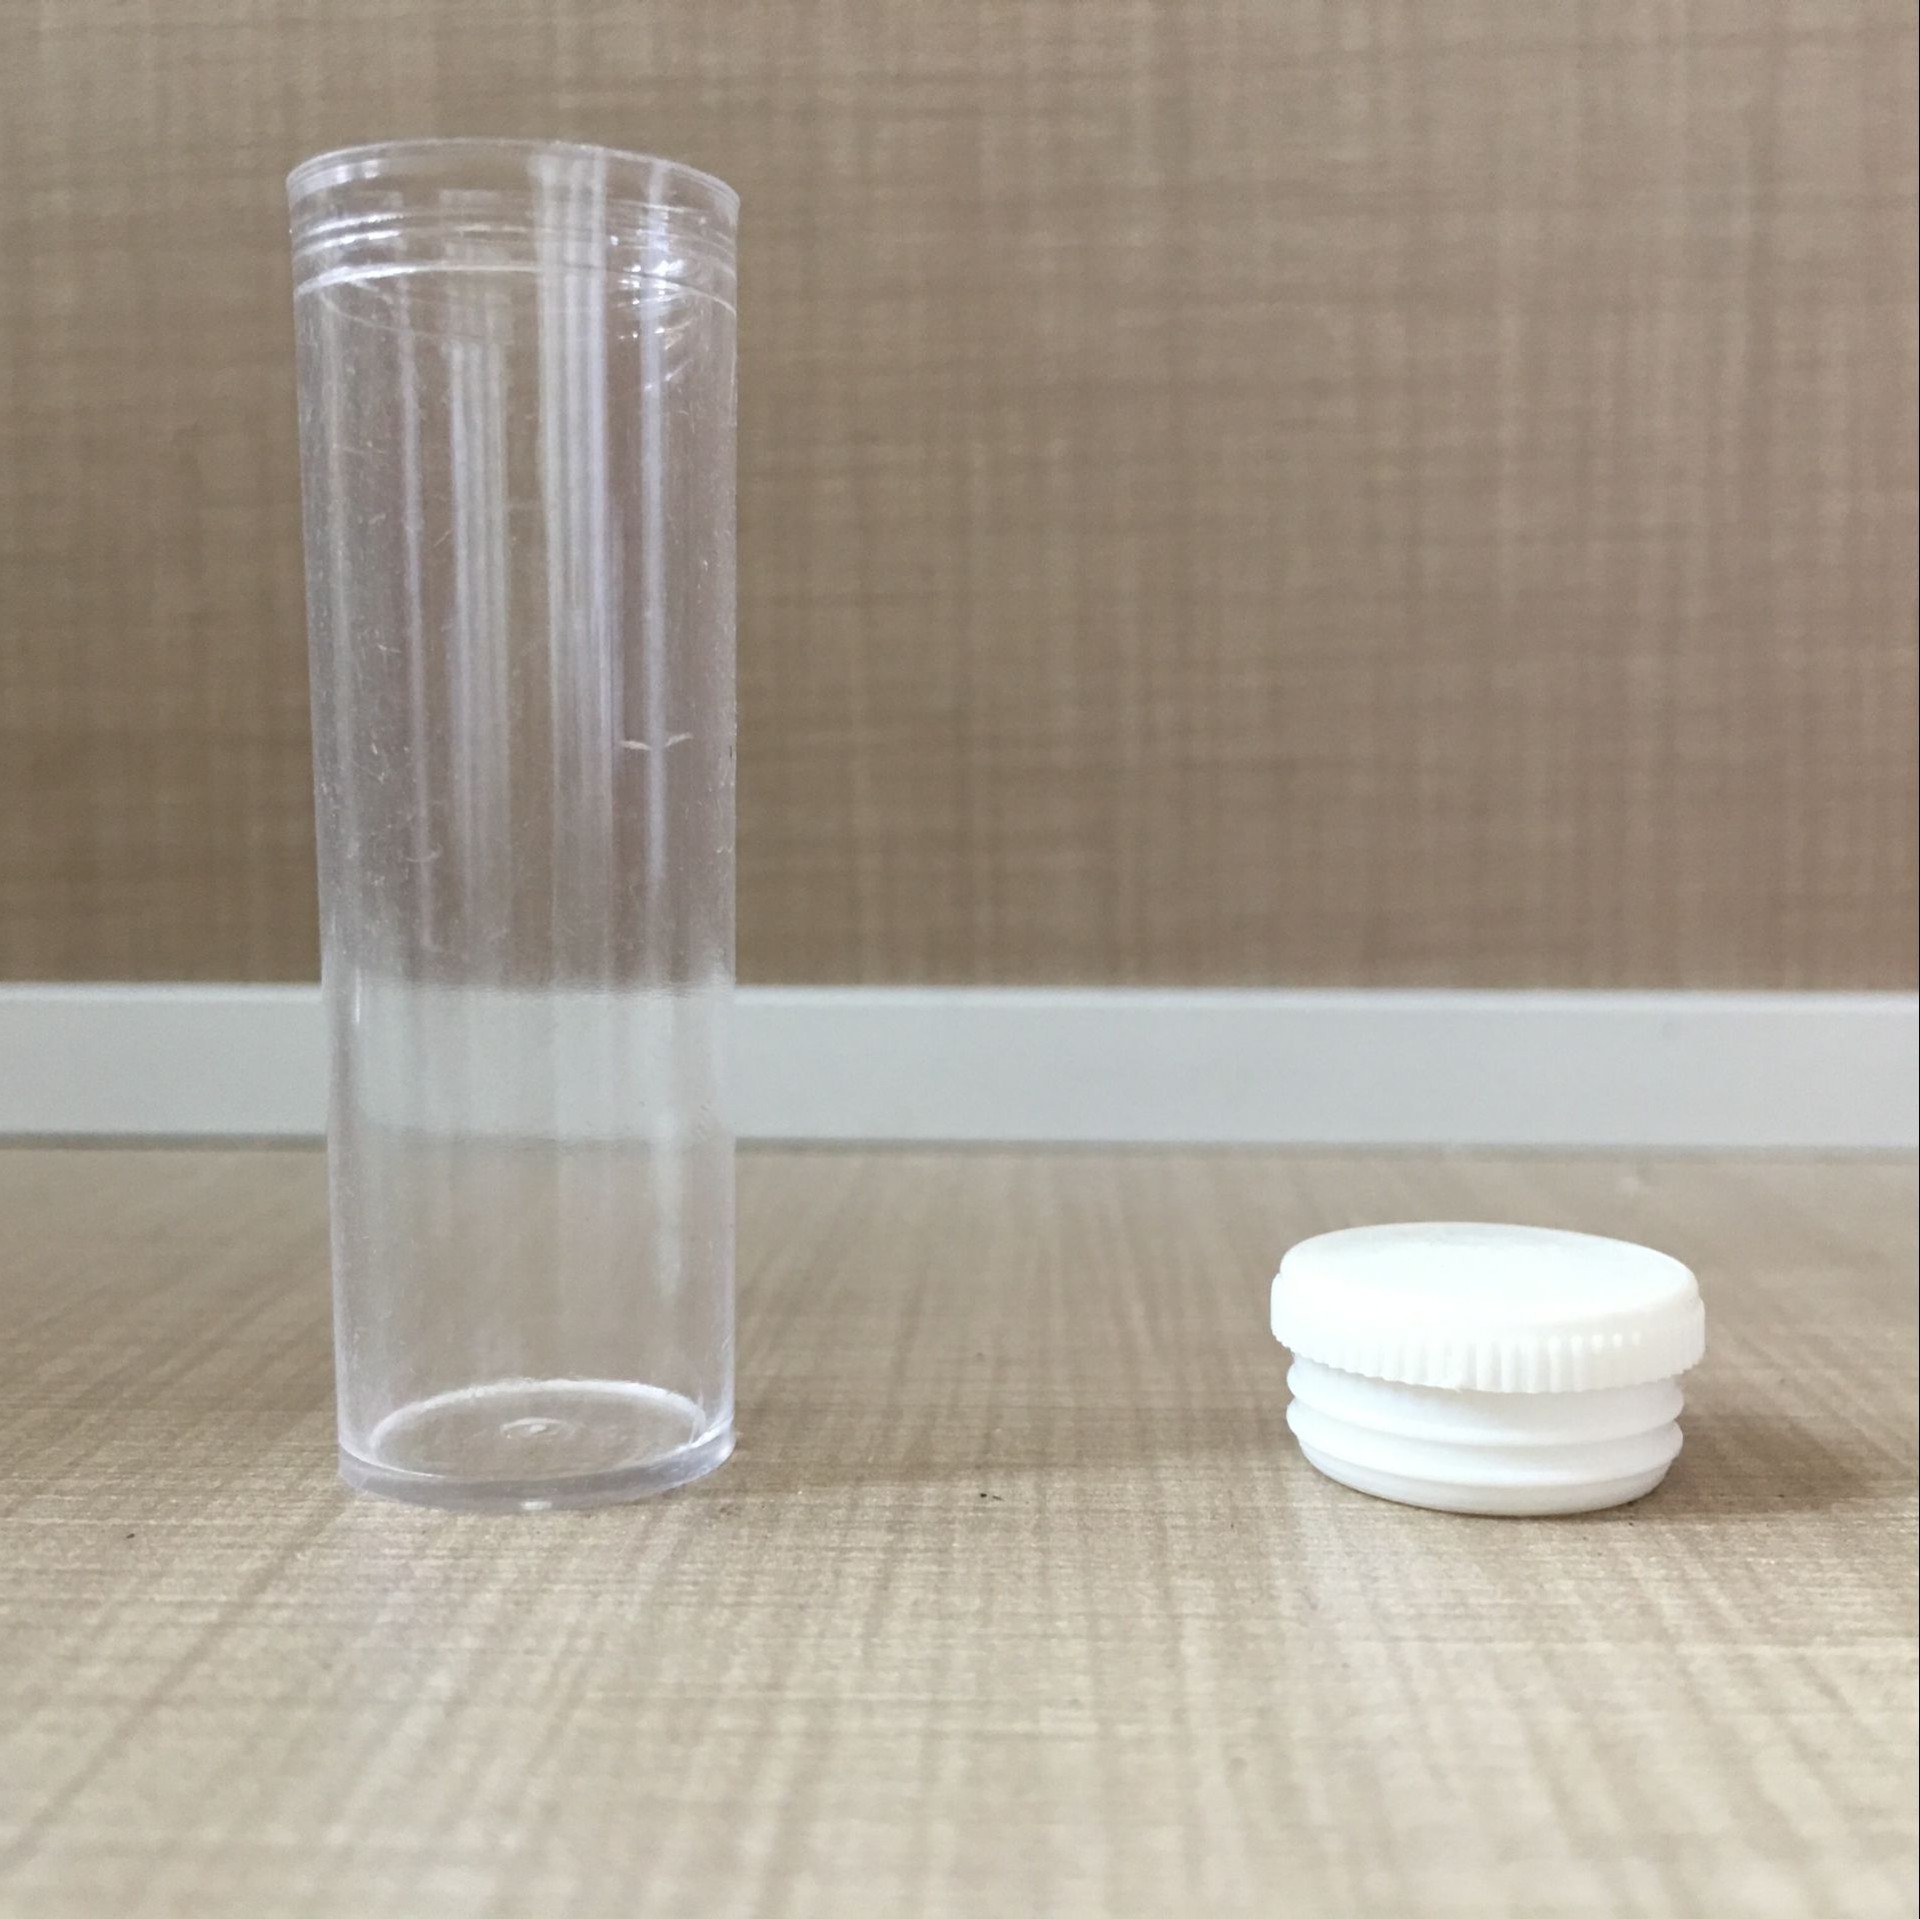 厂家直销2g药管塑料管透明塑料管医用塑料管现货供应示例图8